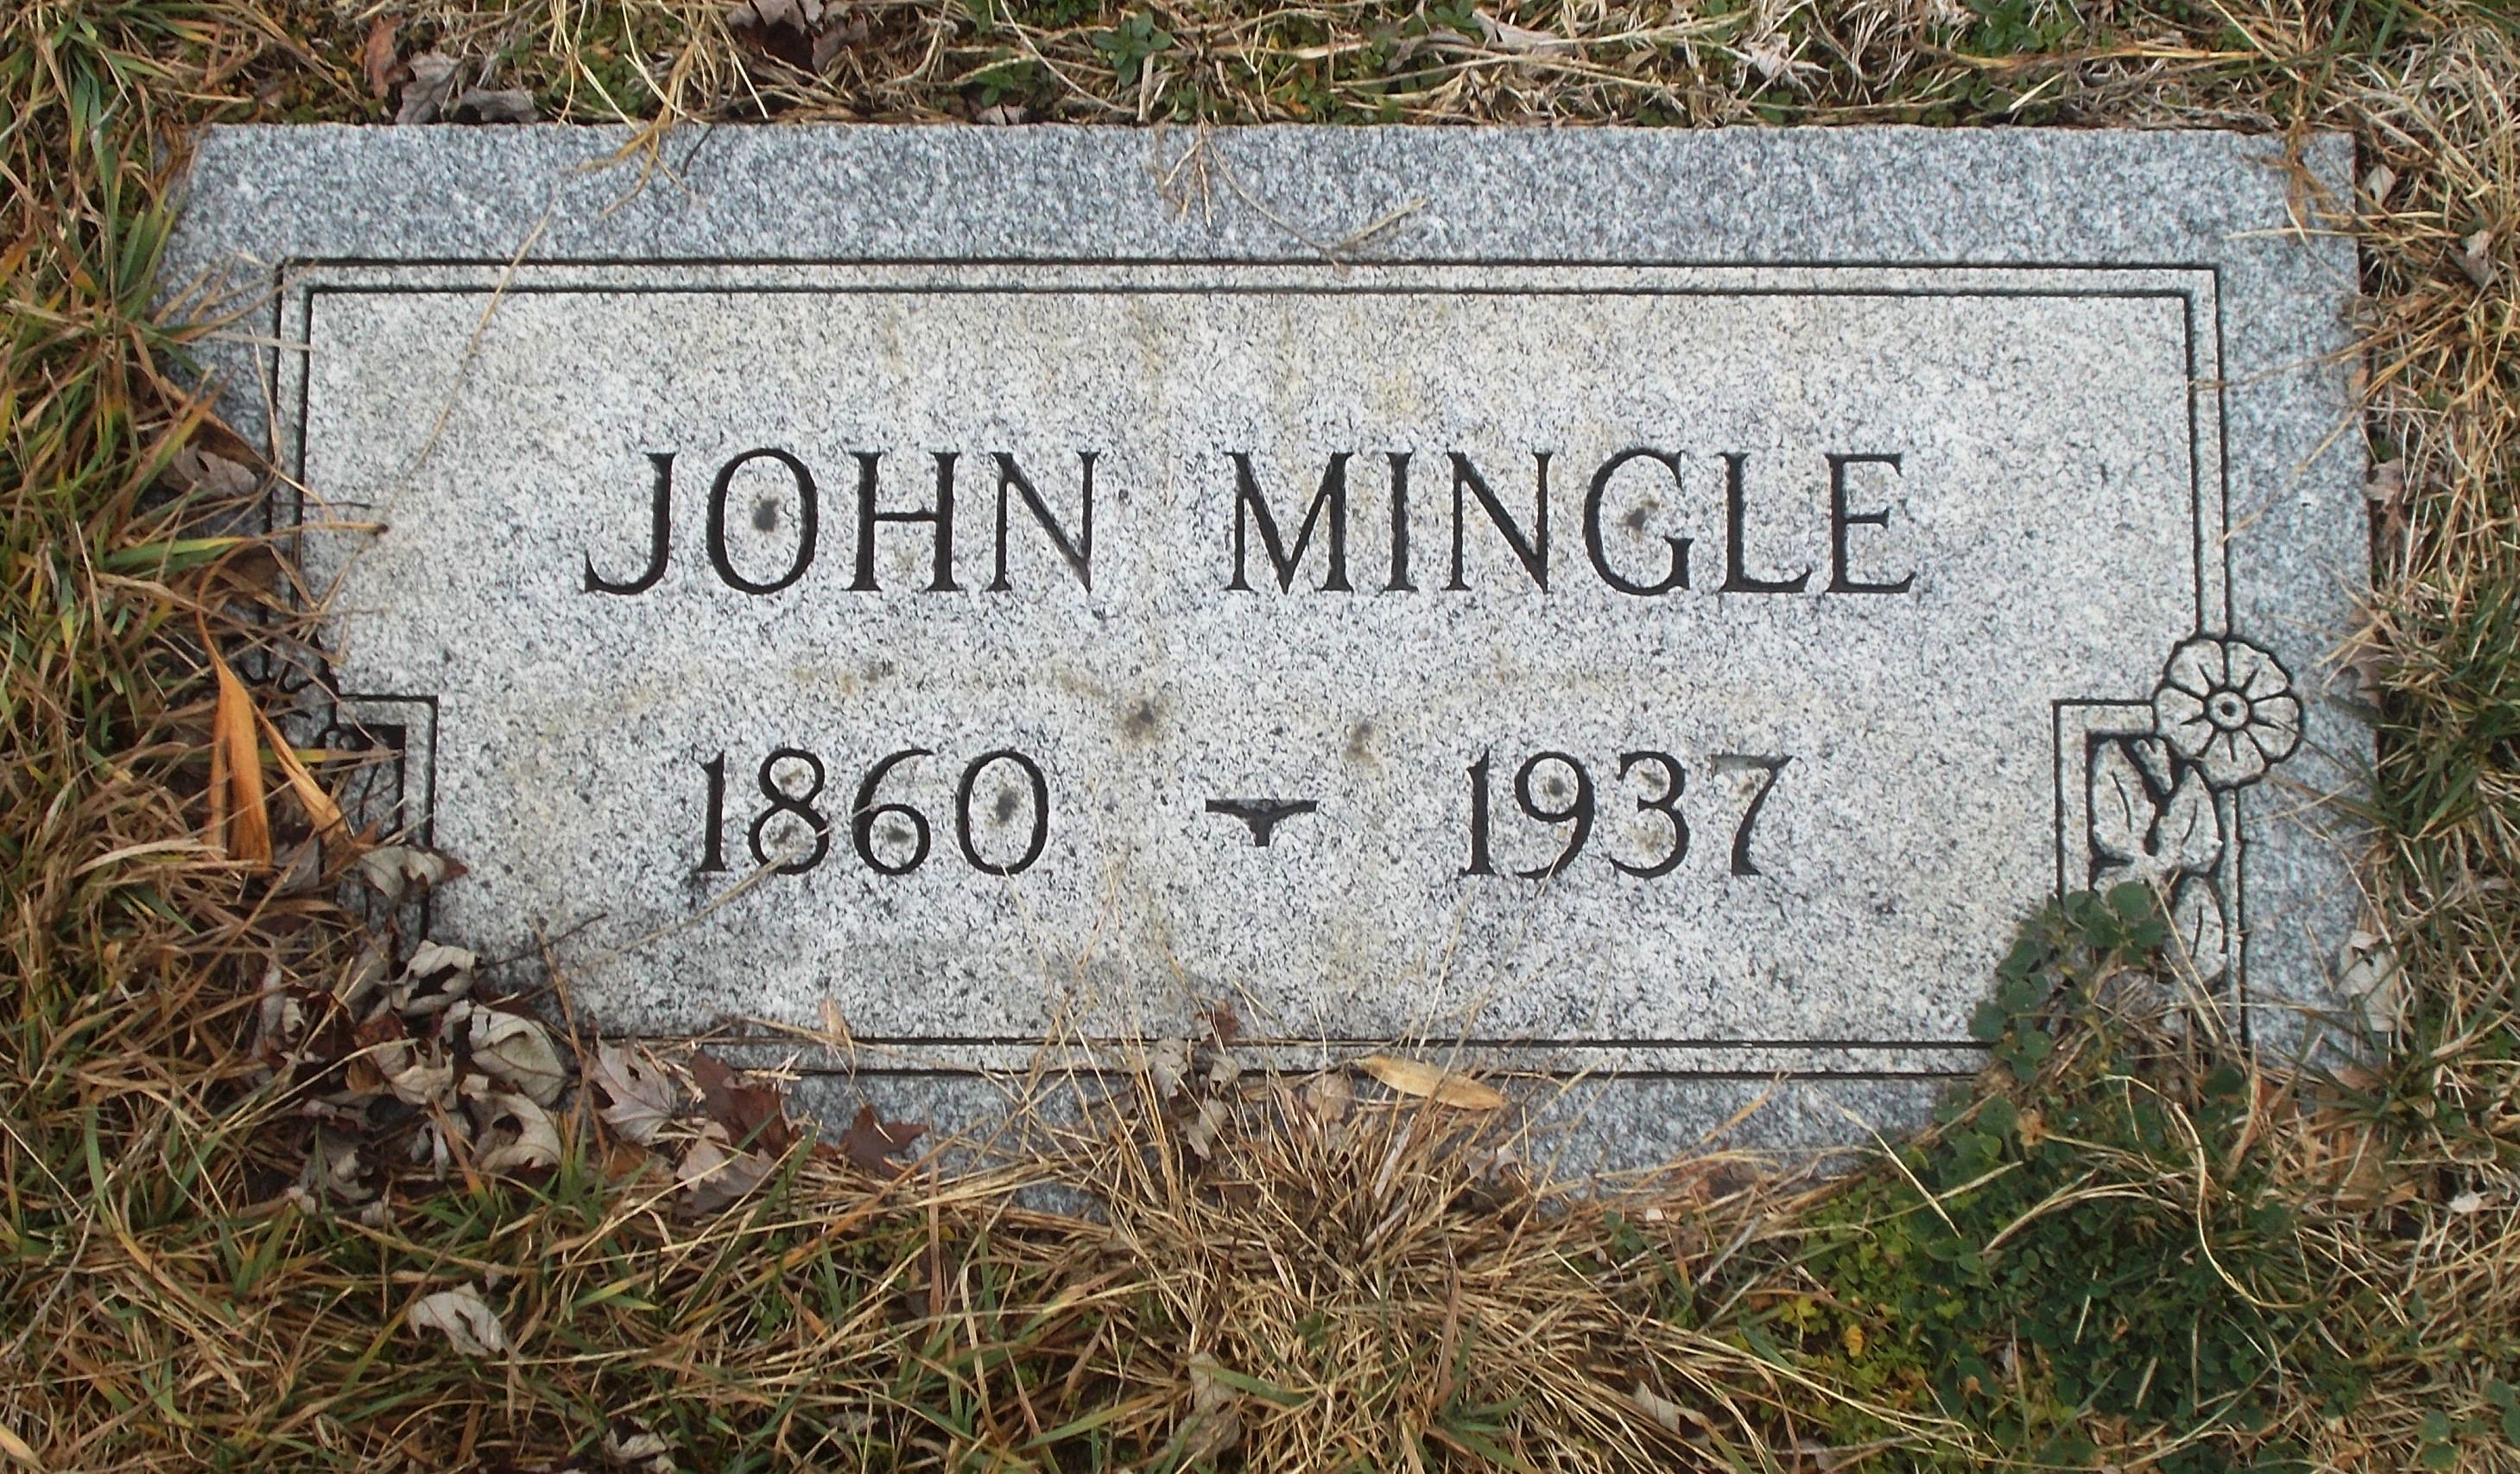 John Mingle